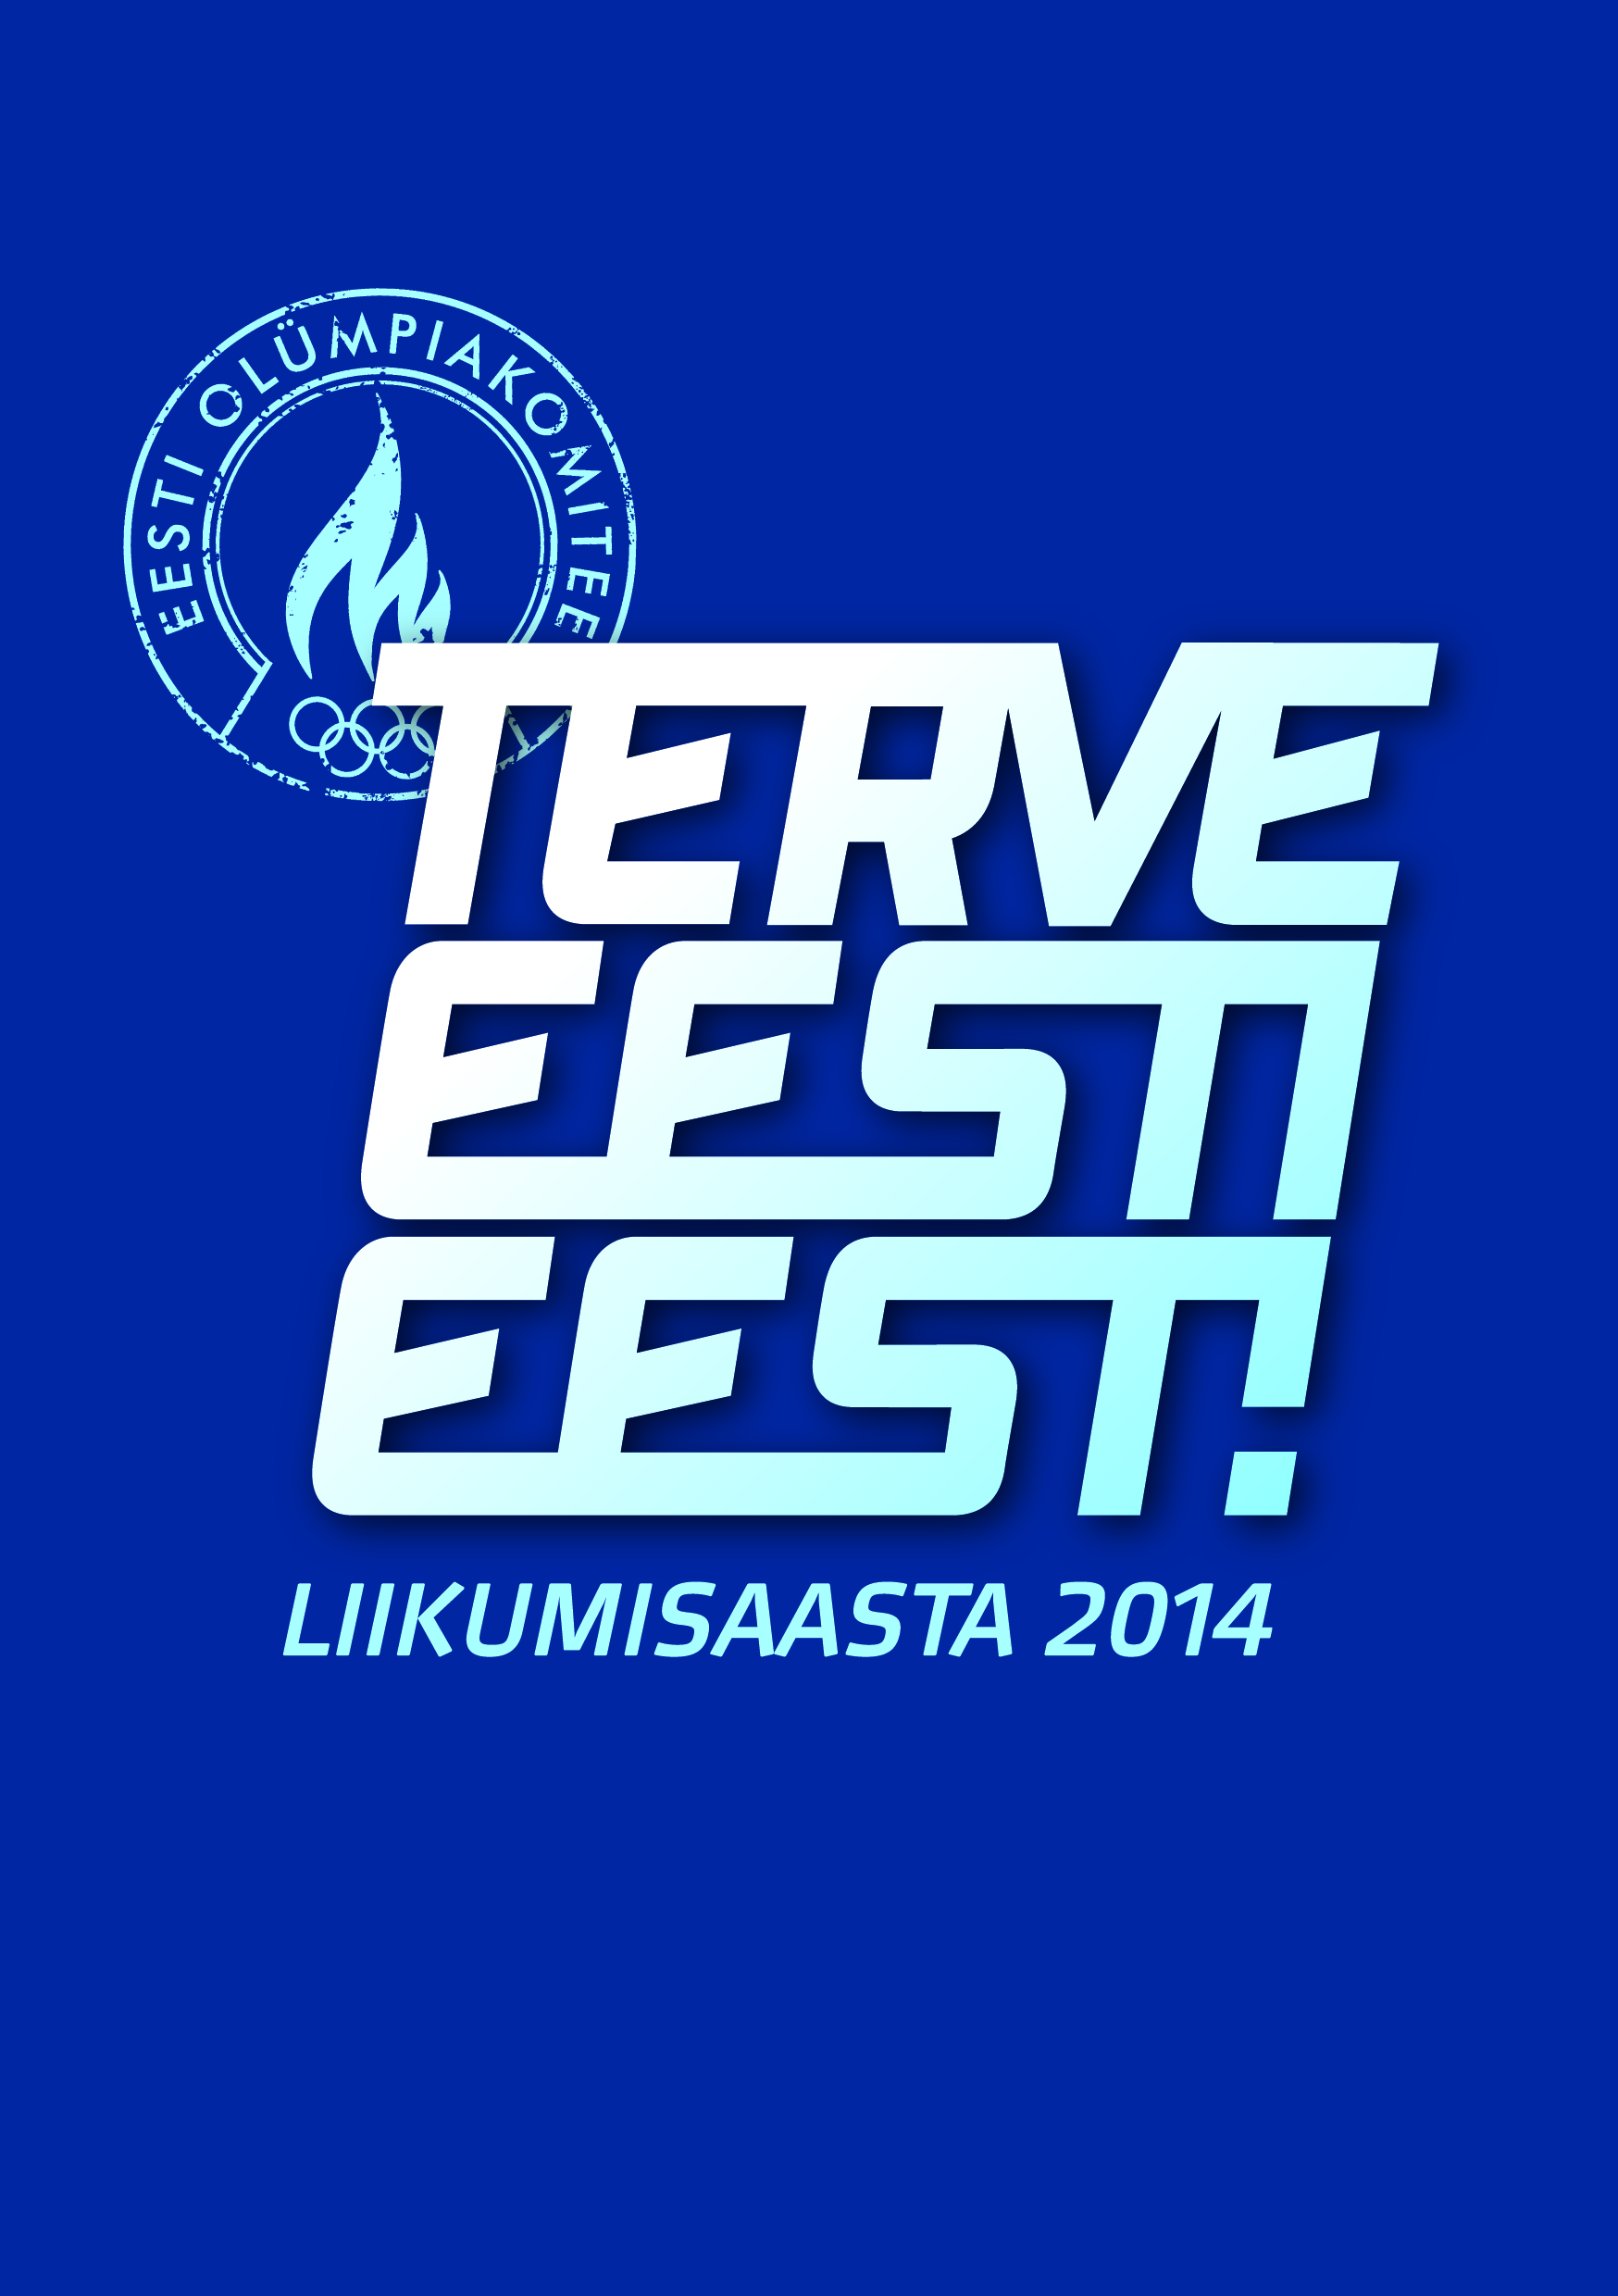 Terve_Eesti_Eest_logo